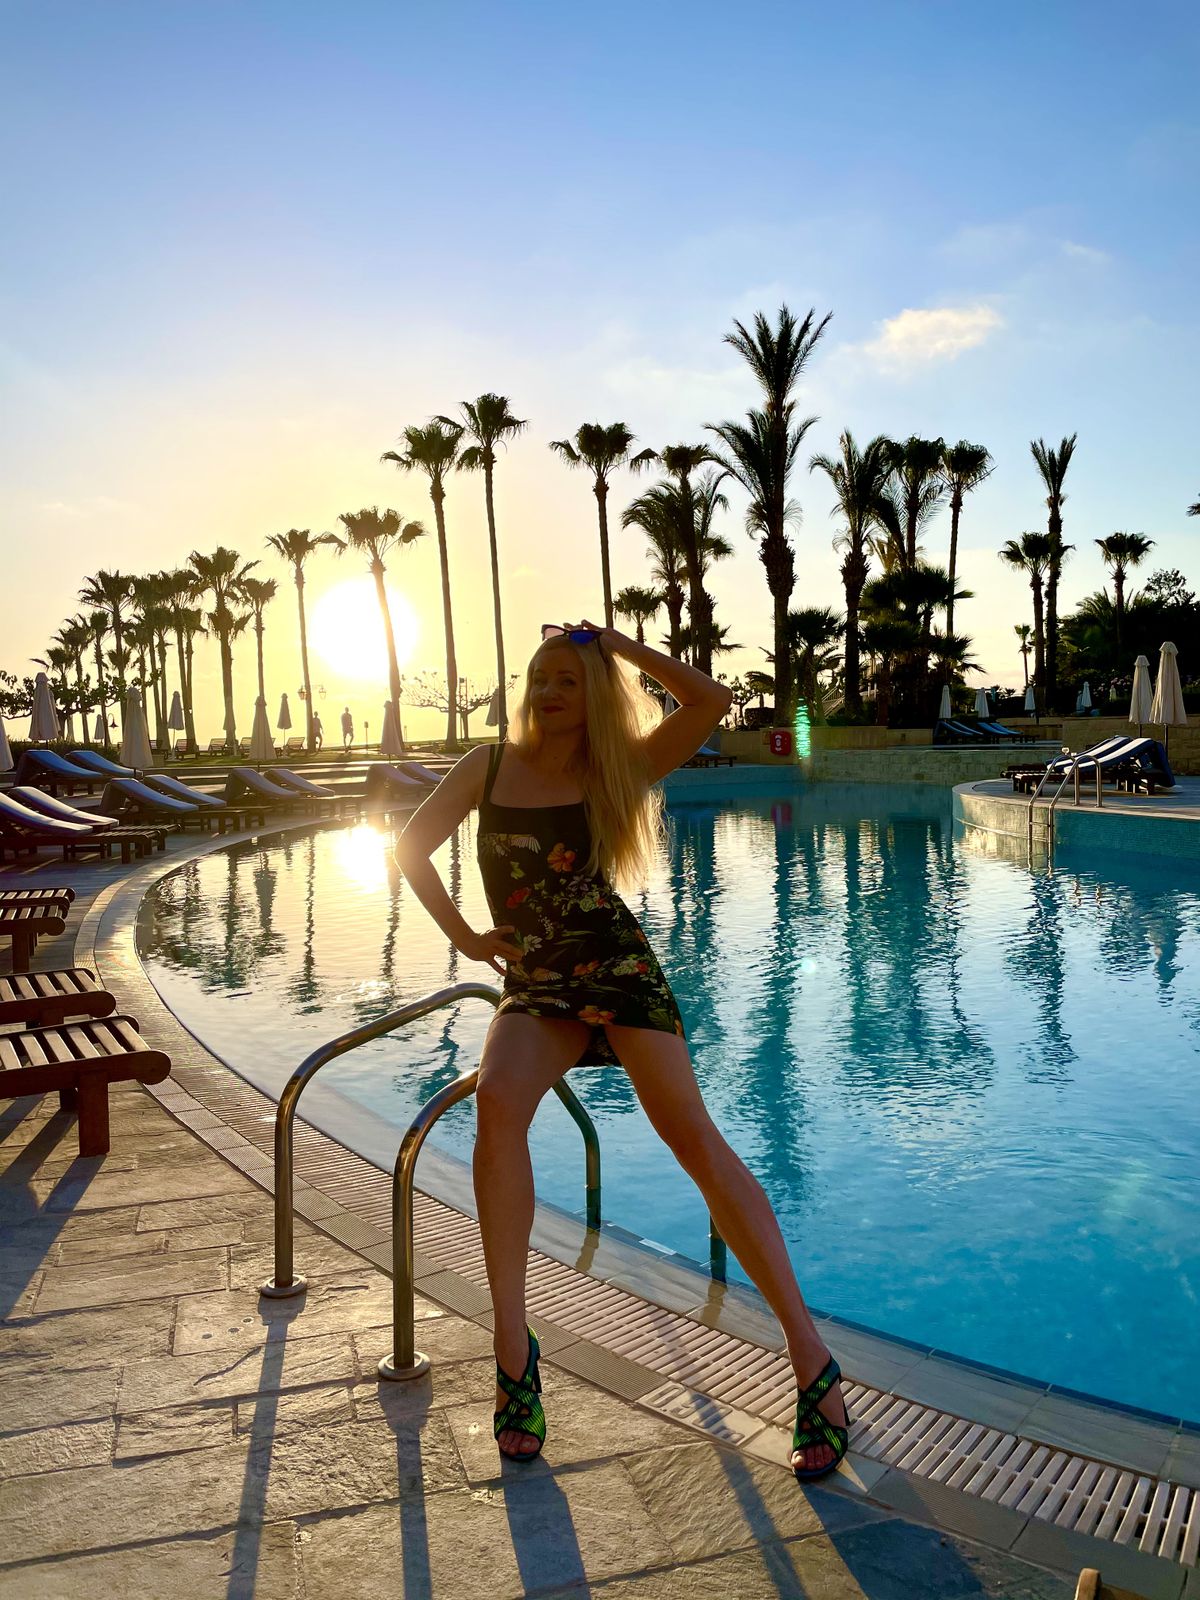 Küprosel toimub praegu just see, millest Eesti turist salamisi unistab: luksuslikud hotellid on rahvast praktiliselt tühjad, hinnad absurdselt soodsad, ilmad soojad, aga mitte tapvalt palavad.